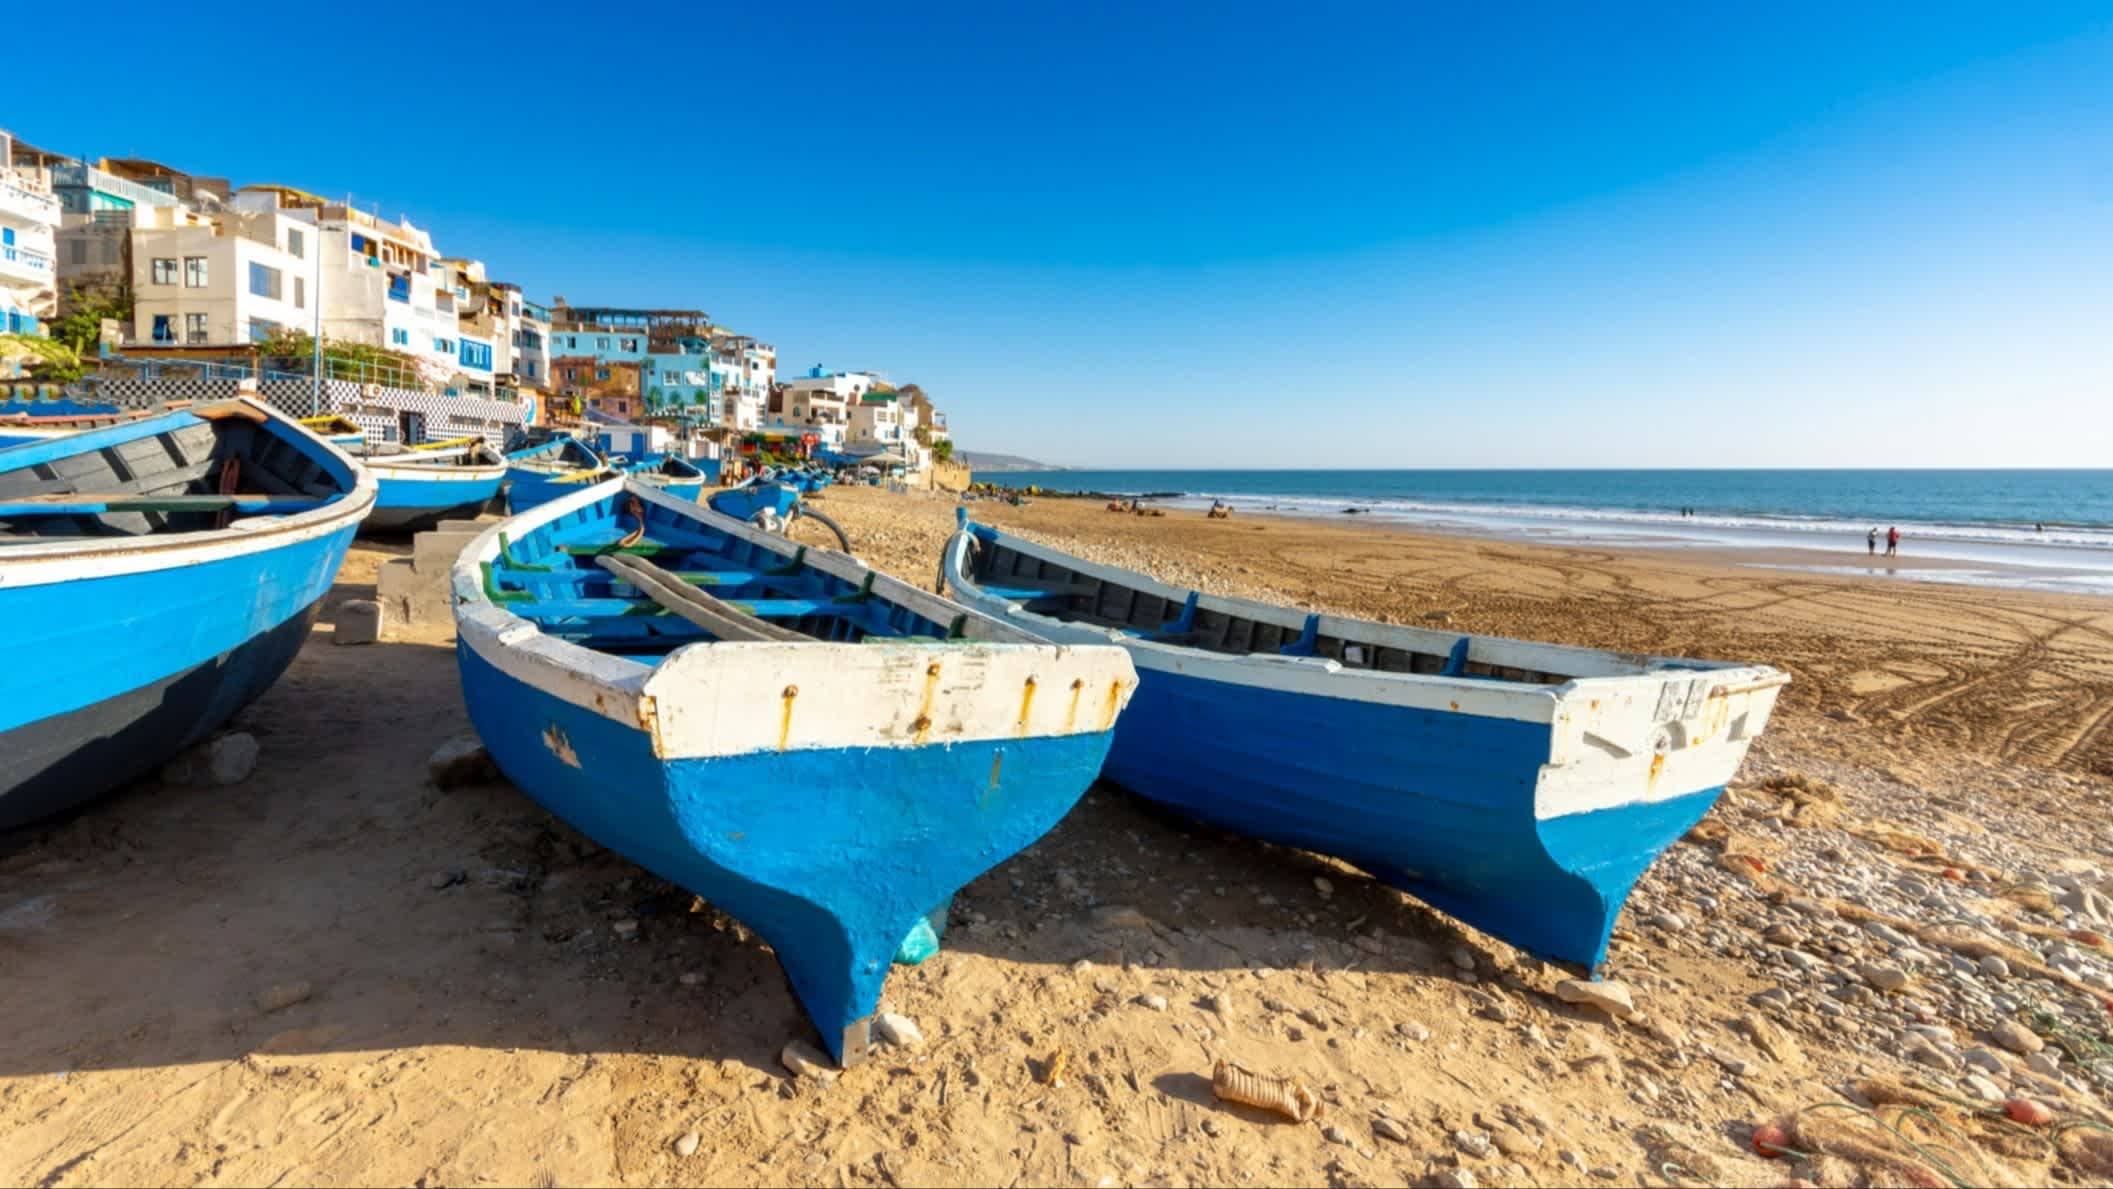 Bateaux bleus et blancs sur le sable de la plage de Taghazout, Maroc